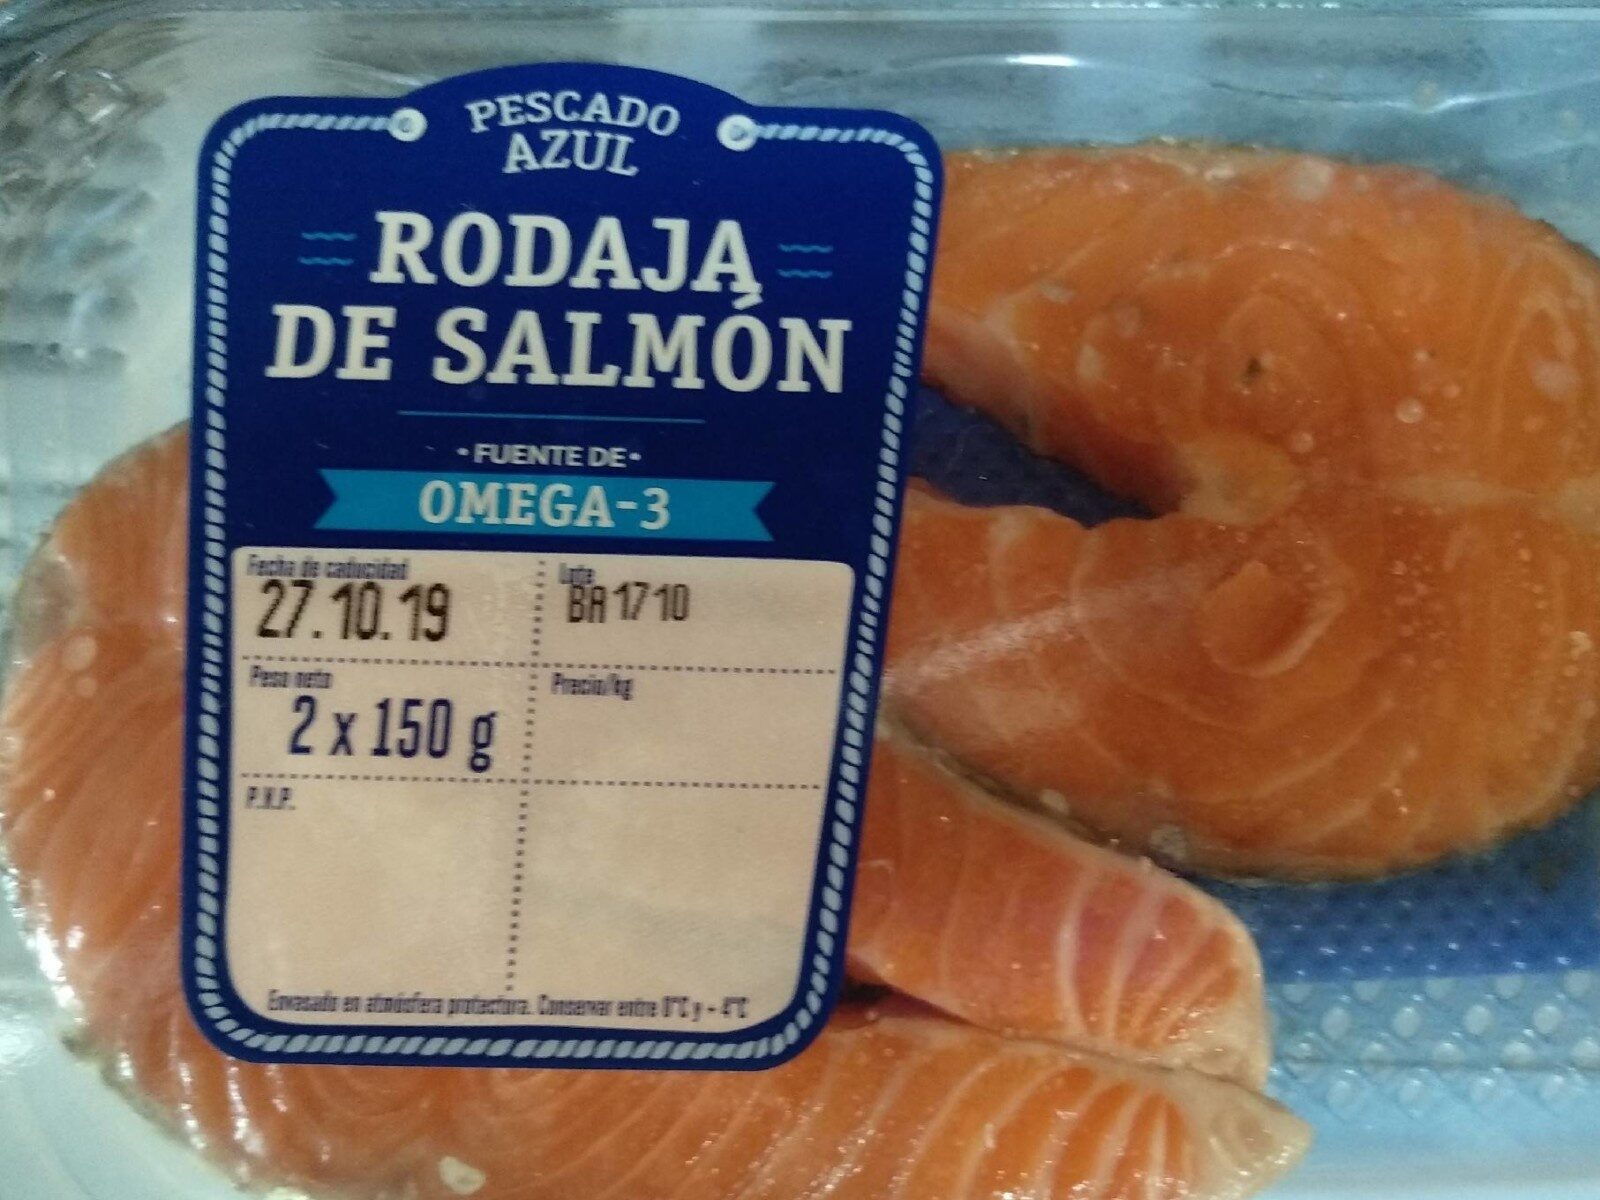 Rodaja de salmón - Product - es